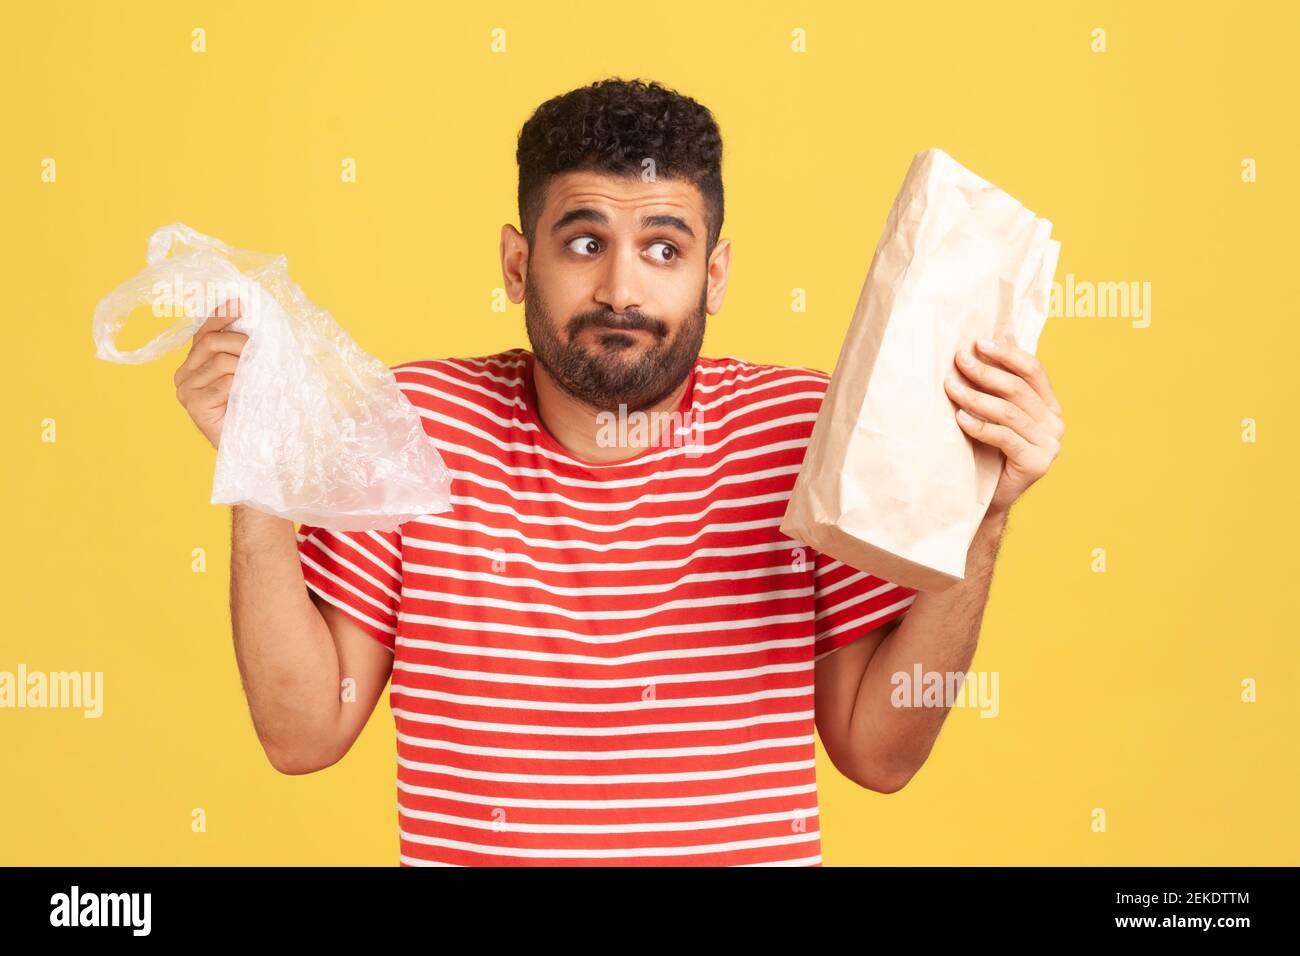 L'uomo confuso e perplesso con la barba che tiene in borse di plastica e di carta, cercando di fare la scelta giusta, riducendo il consumo di plastica. Riprese in studio al coperto Foto Stock